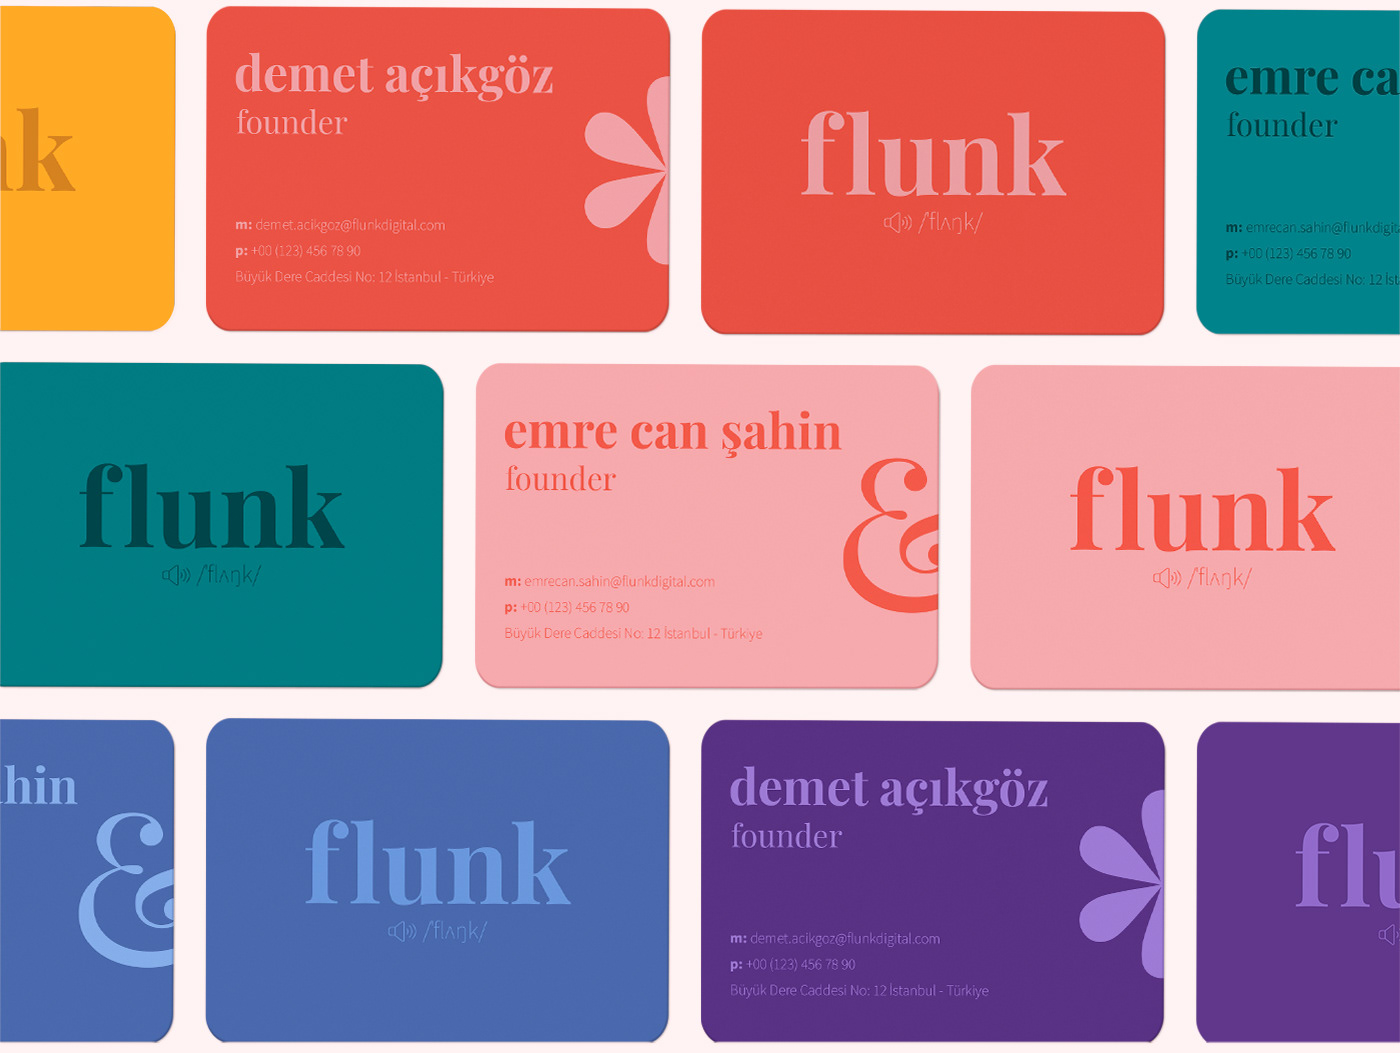 Flunk Digital Agency - (2019 - 2021)
Flunk is a digital agency.
